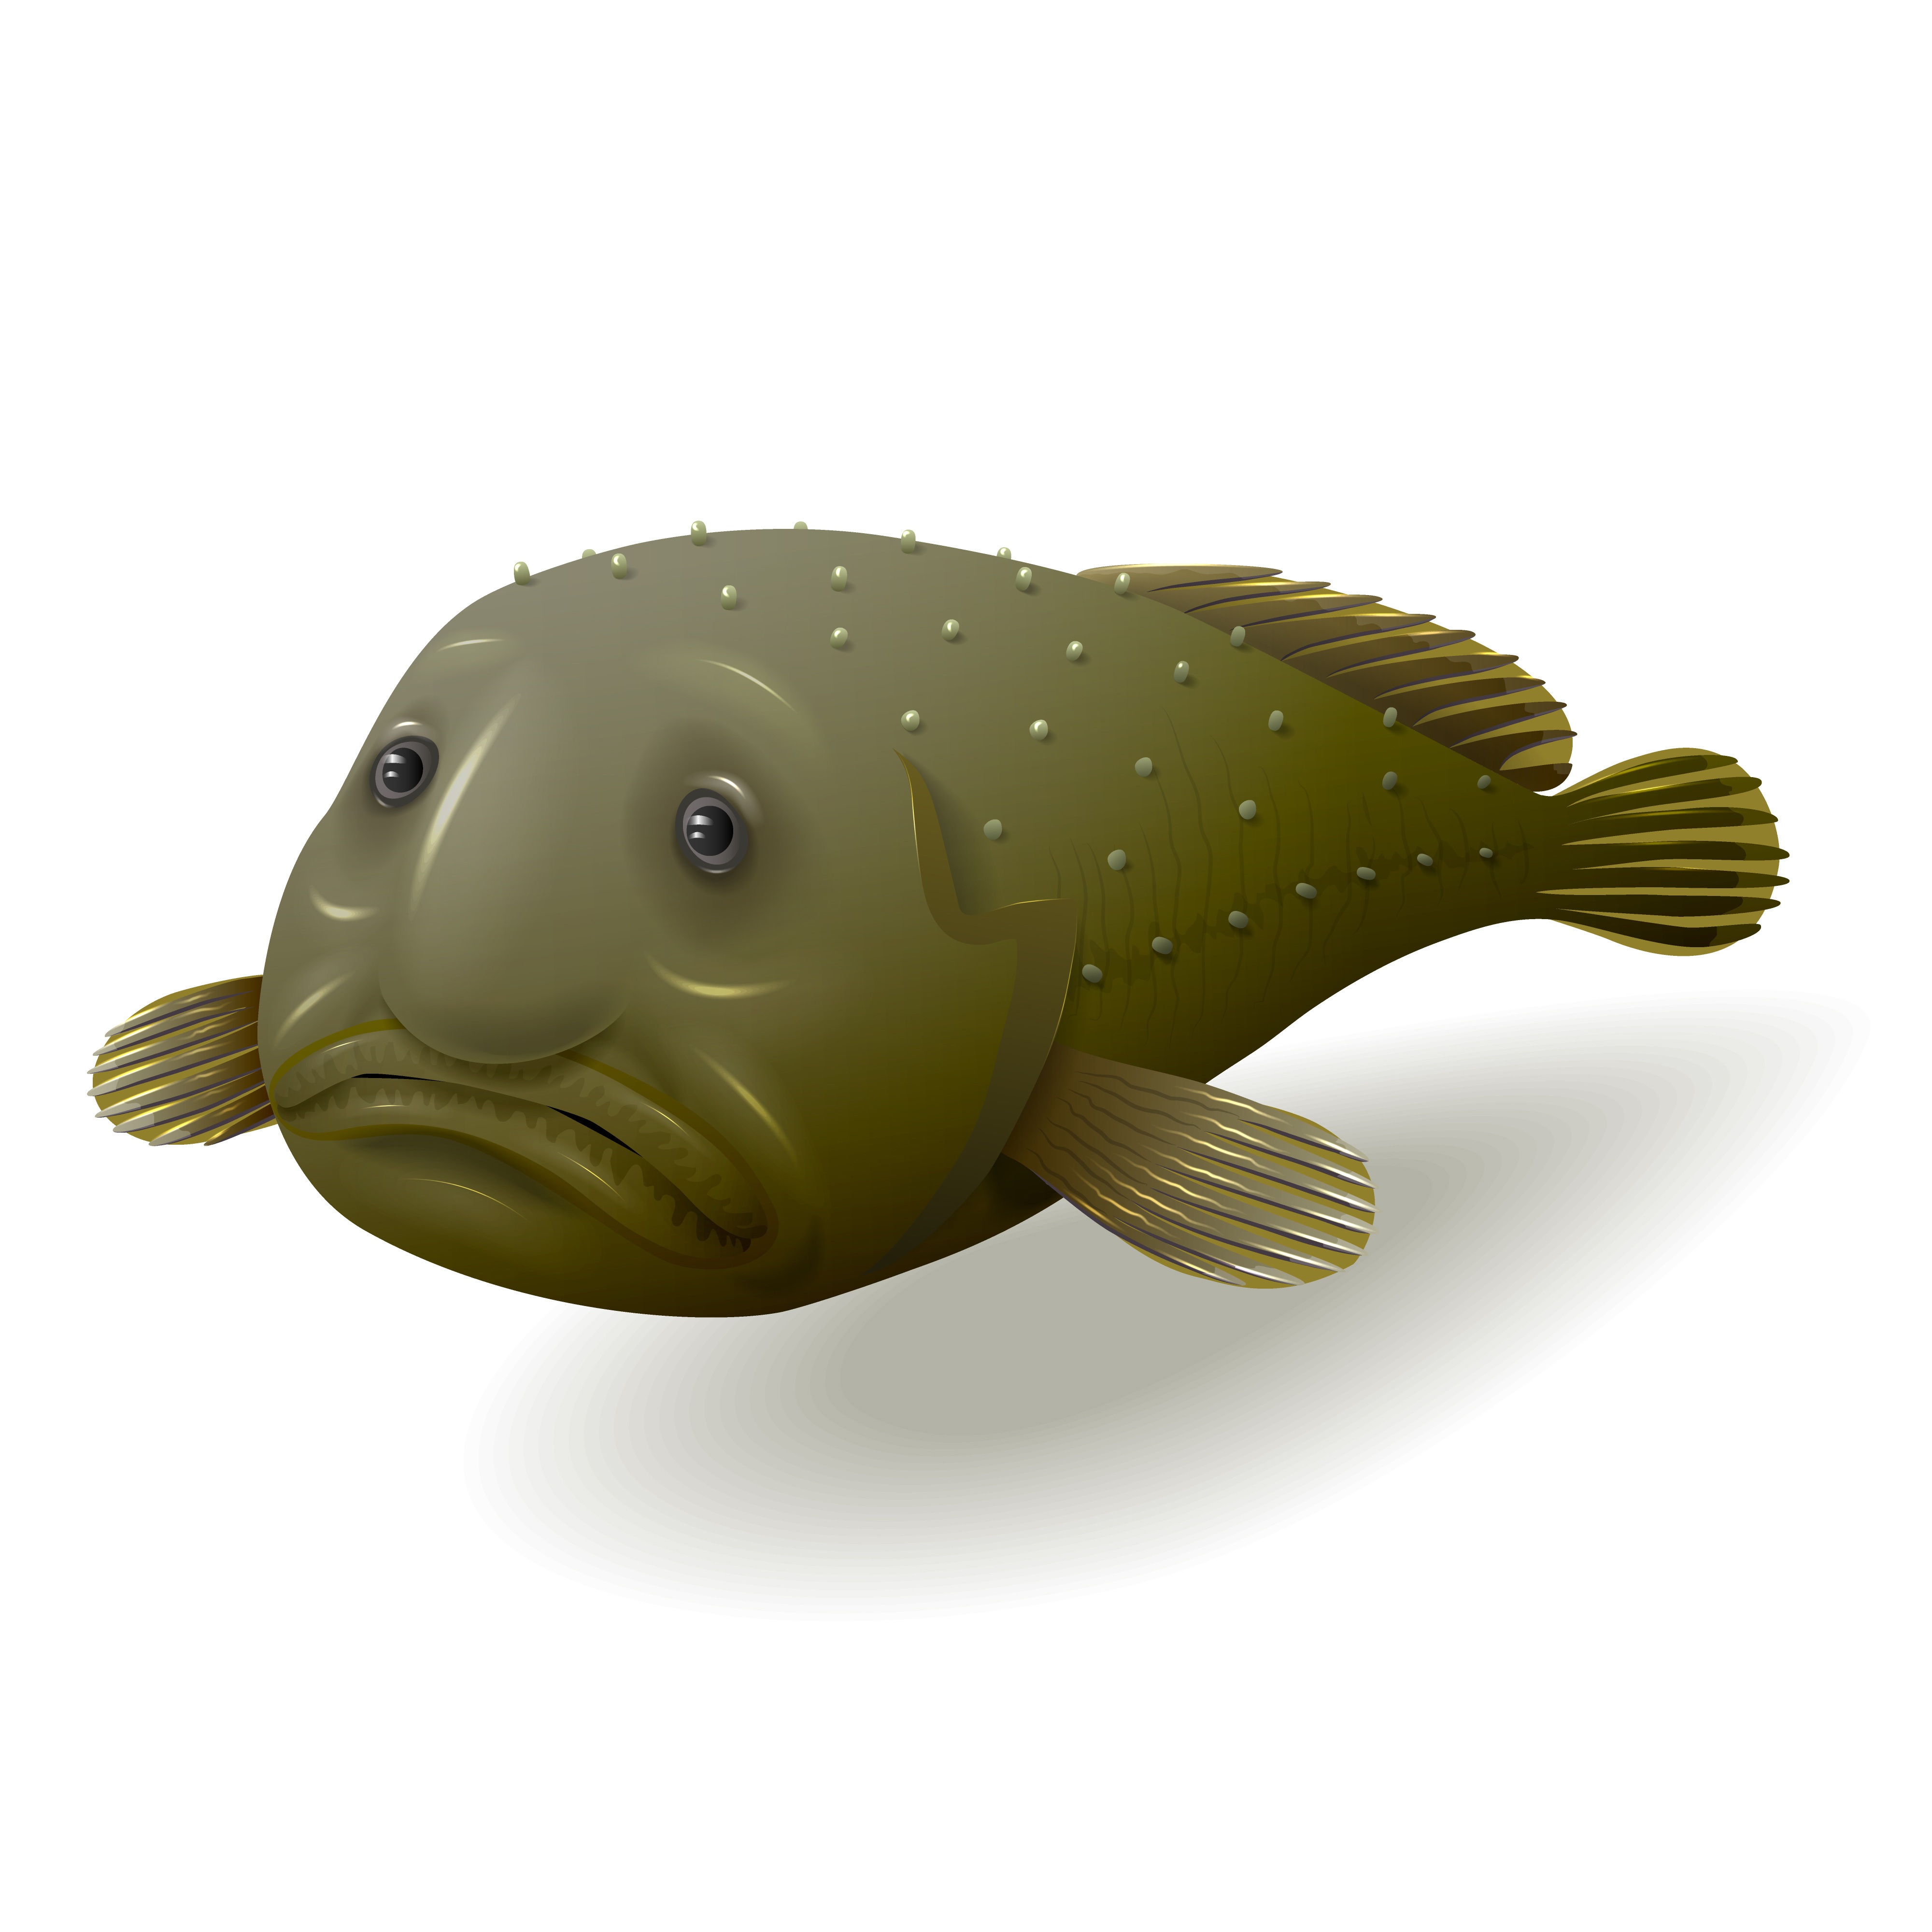 Caratteristiche del pesce blob